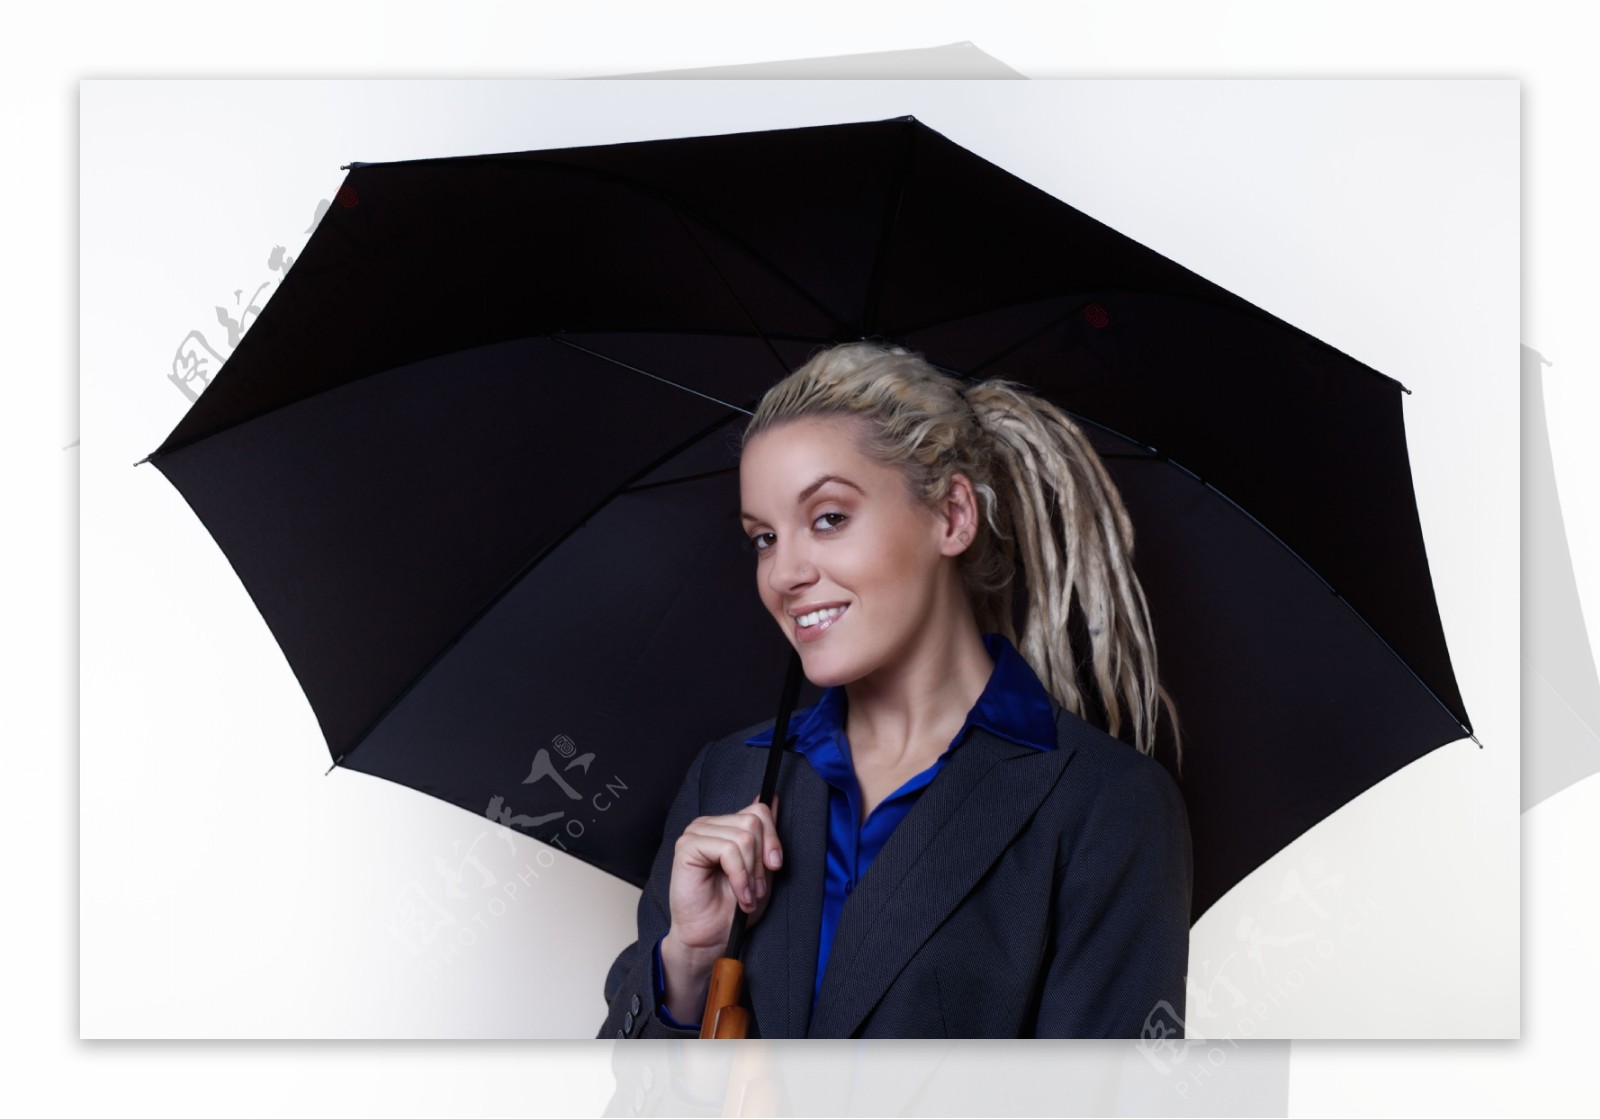 撑黑色的伞的女人图片